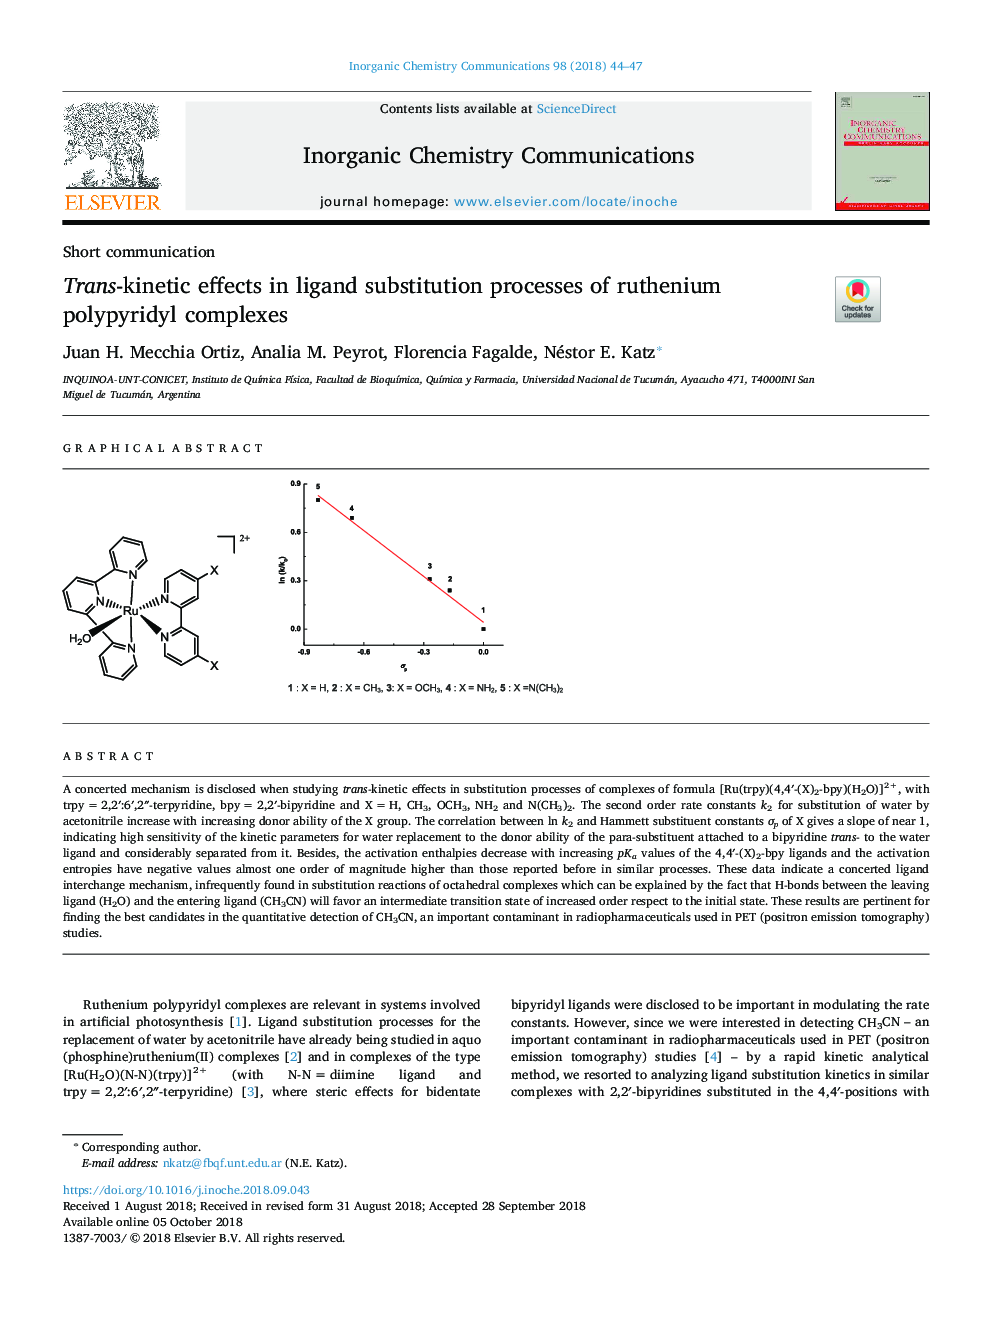 اثرات ترانکینتیک در فرایندهای جایگزینی لیگاند پالپیریدیل روتنیم